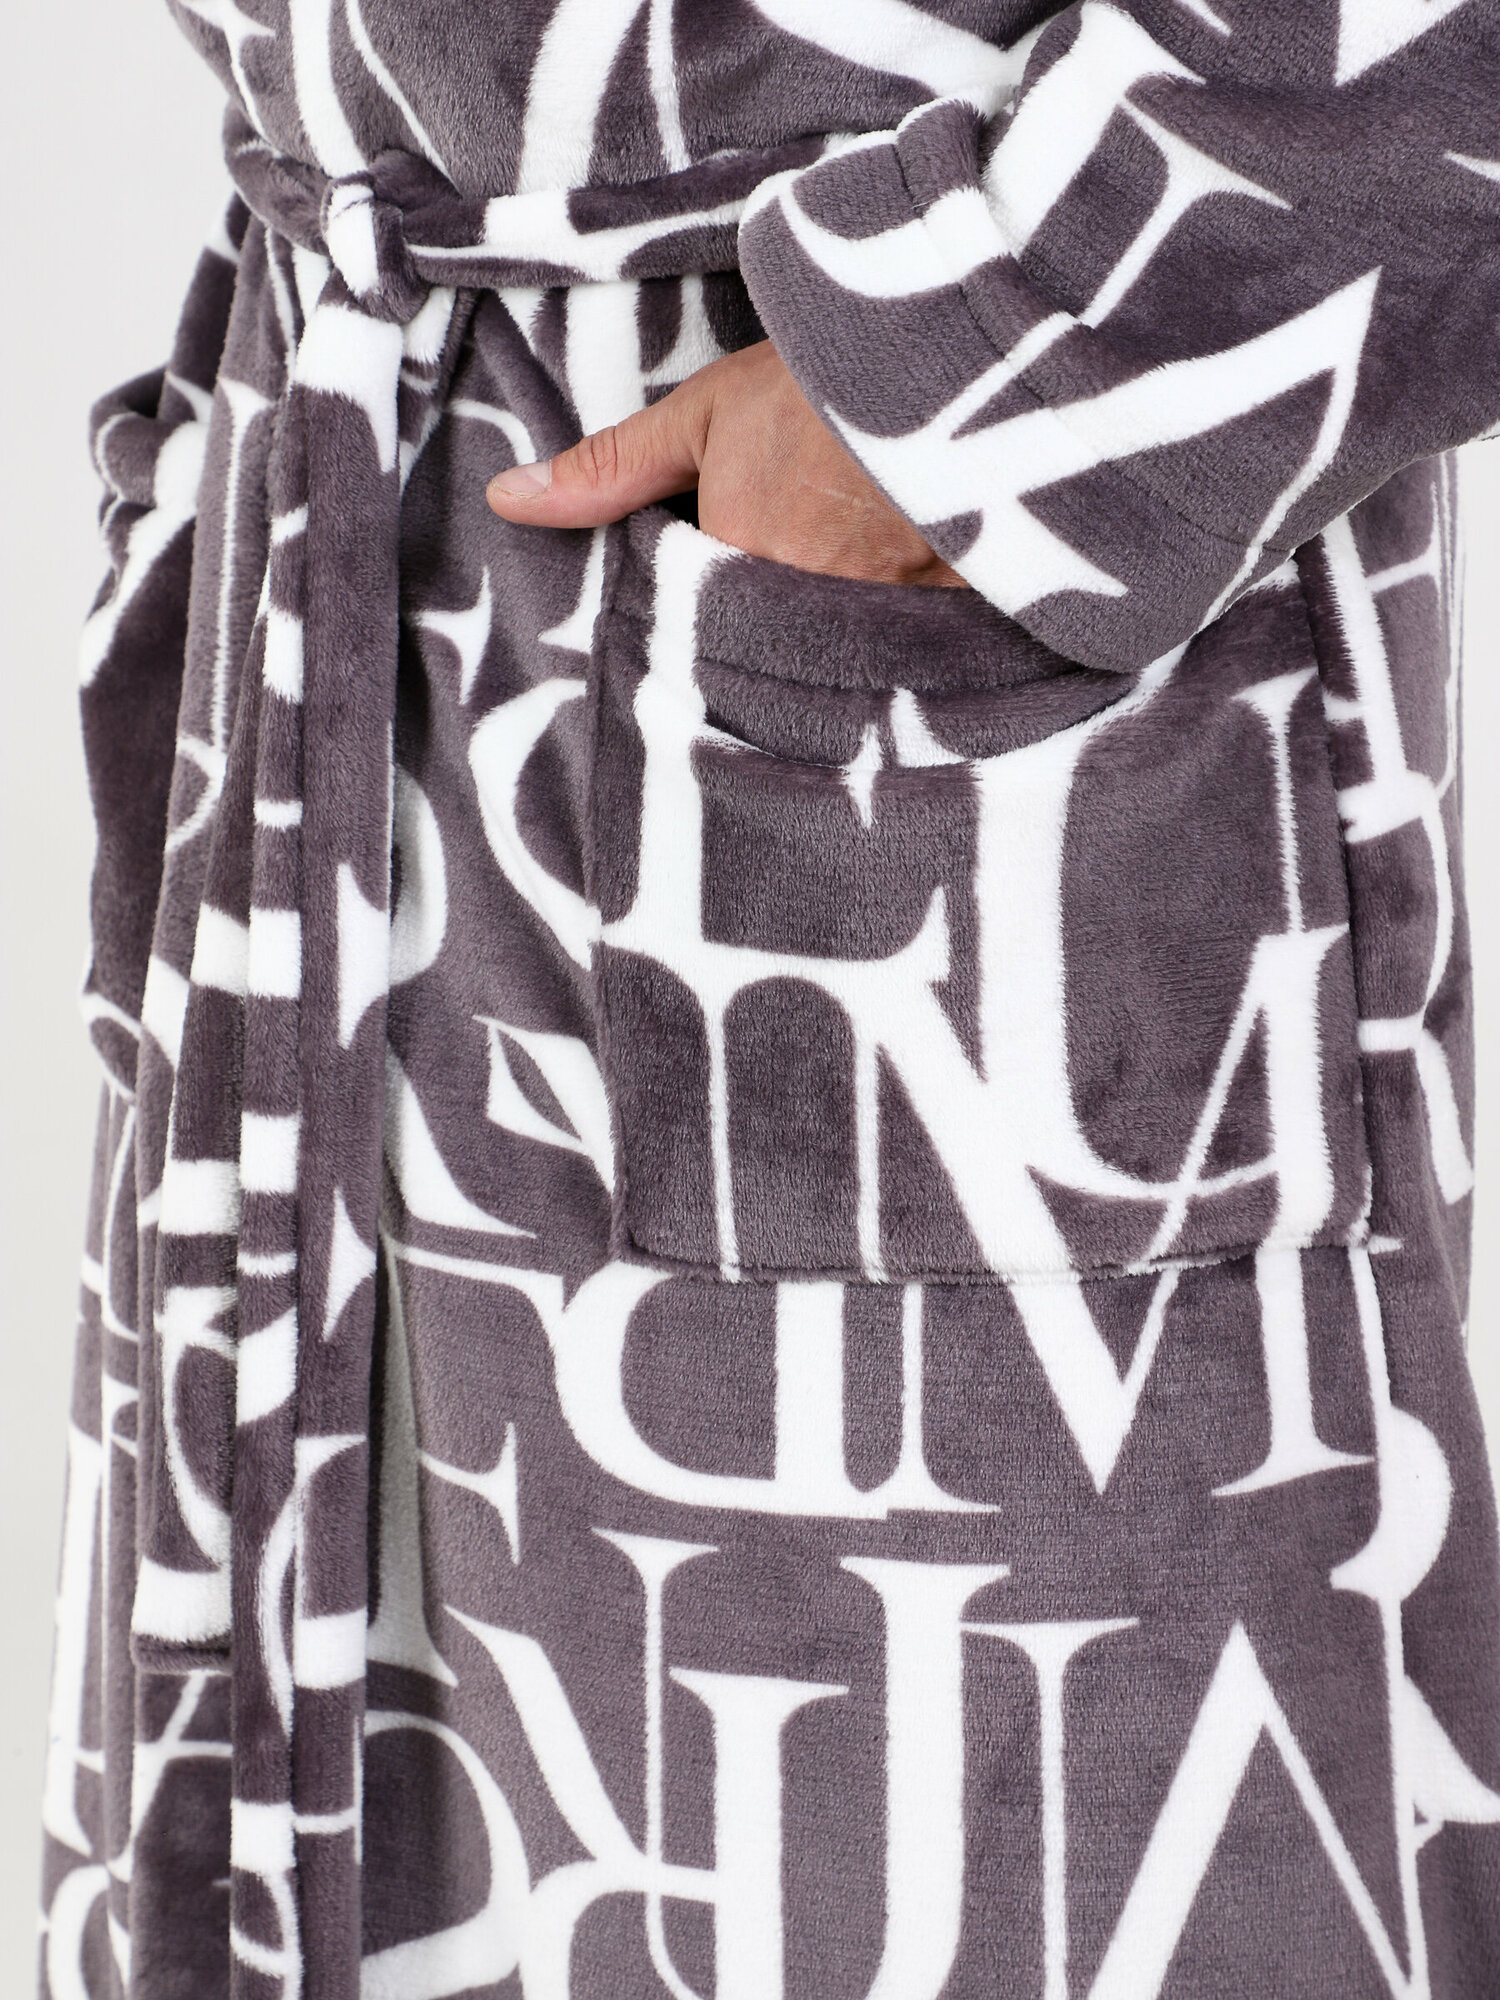 Халат IvCapriz, длинный рукав, пояс/ремень, утепленная, карманы, трикотажная, банный халат, размер 46, белый, коричневый - фотография № 8